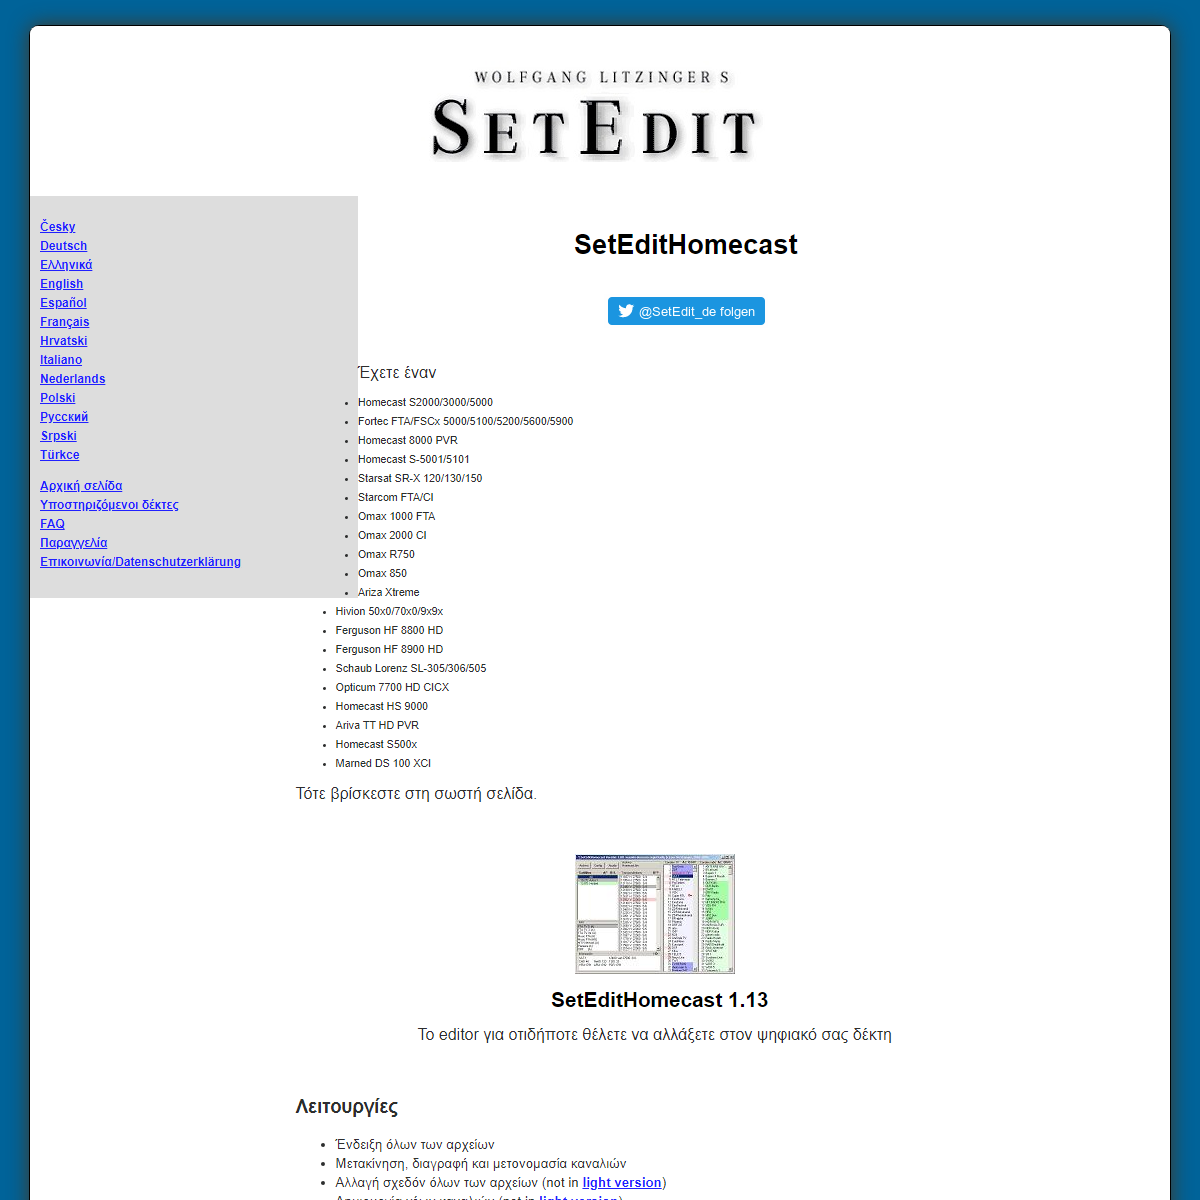 A complete backup of https://www.setedit.de/SetEdit.php?spr=11&Editor=53